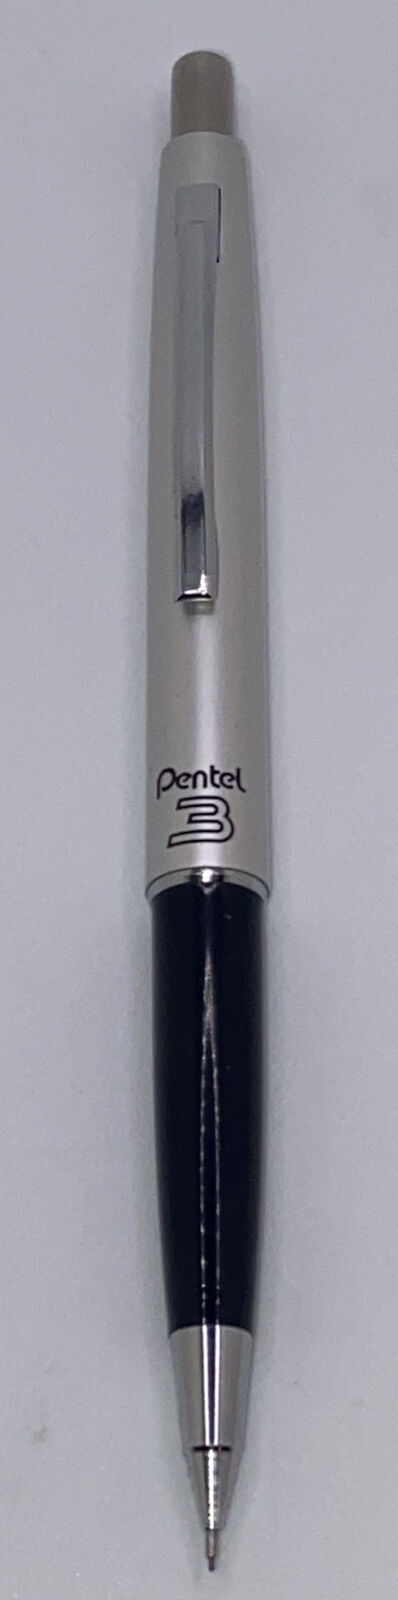 Vintage PENTEL 3 PS513 Mechanical Pencil Japan PUSH TOP ~ 0.3mm lead EUC